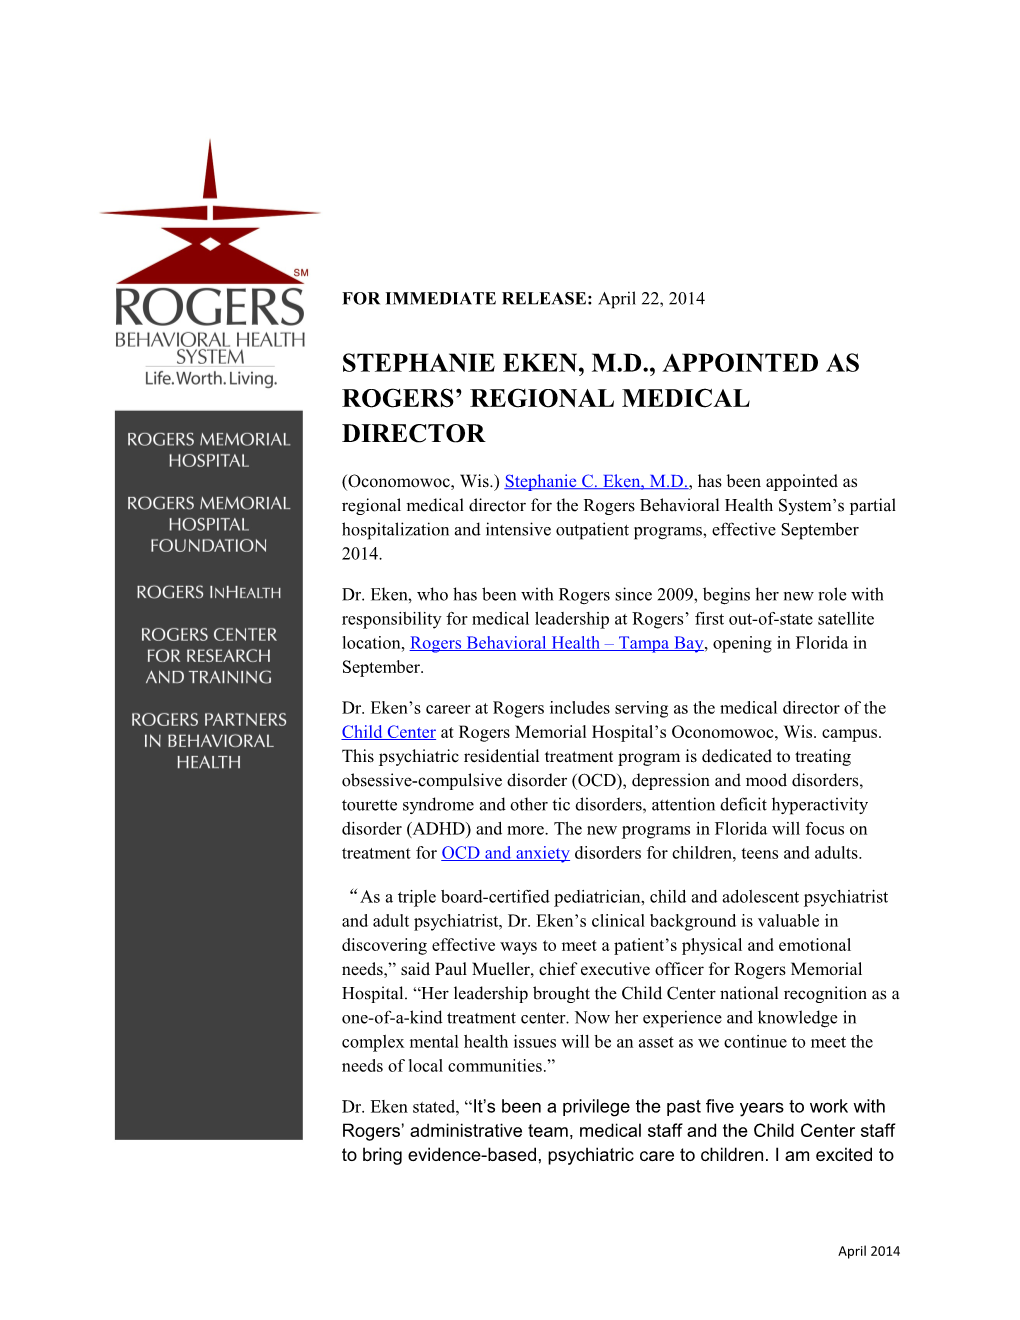 Stephanie Eken, M.D., Appointed As Rogers Regional Medical Director